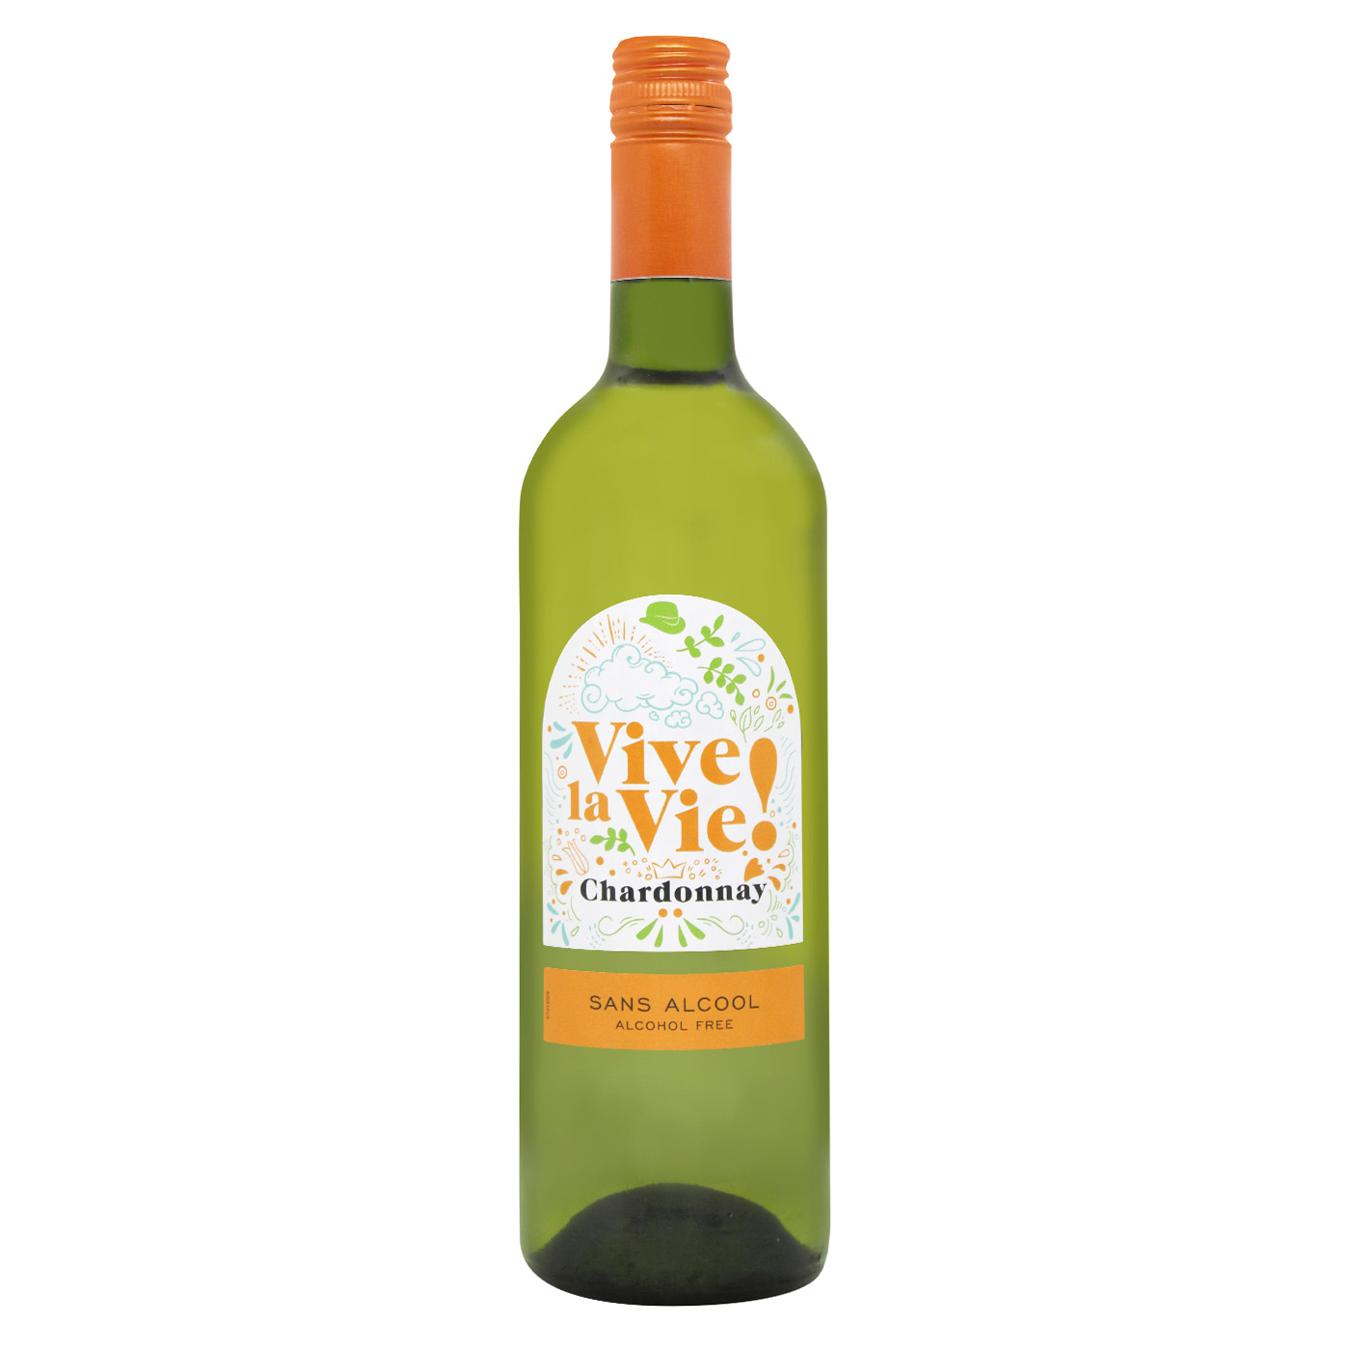 Вино Vive la vie Chardonnay белое 0% 0,75л